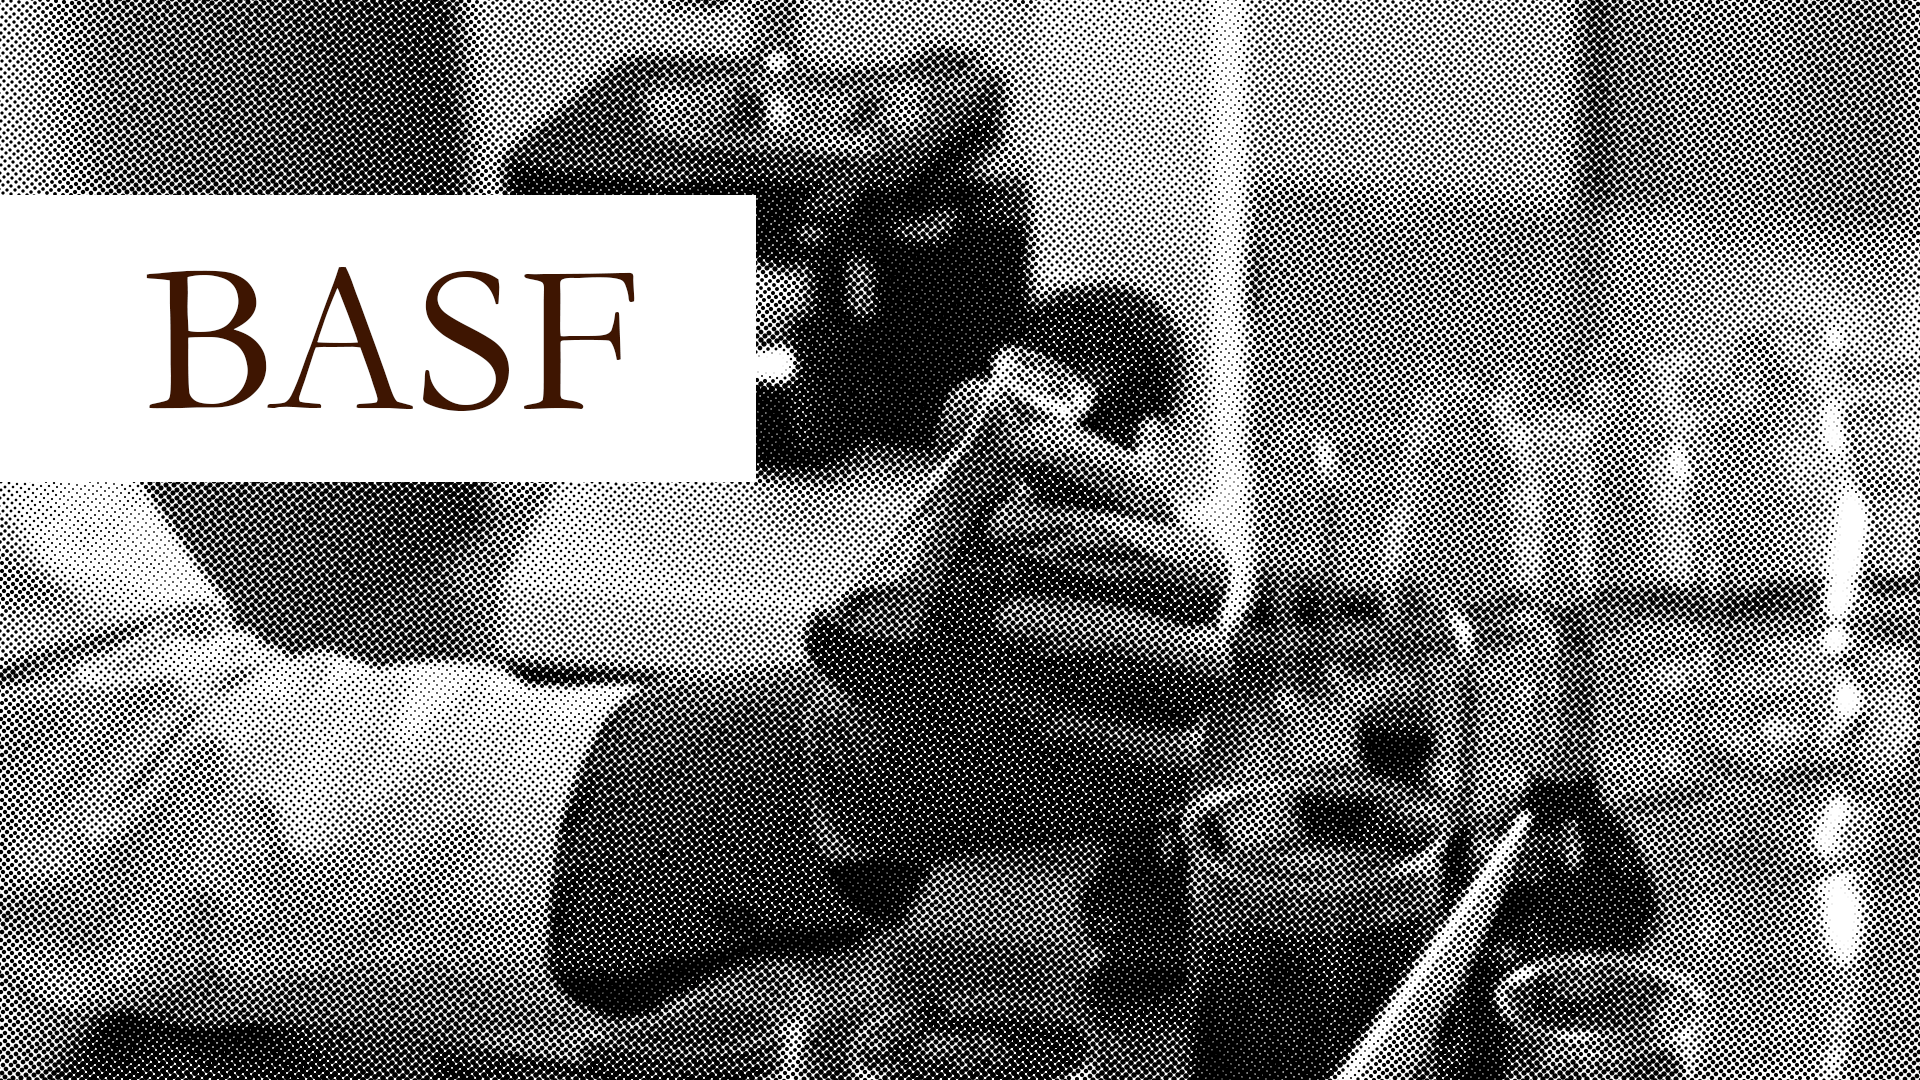 BASF: ein nachhaltiger, aber etwas riskanter Chemieproduzent